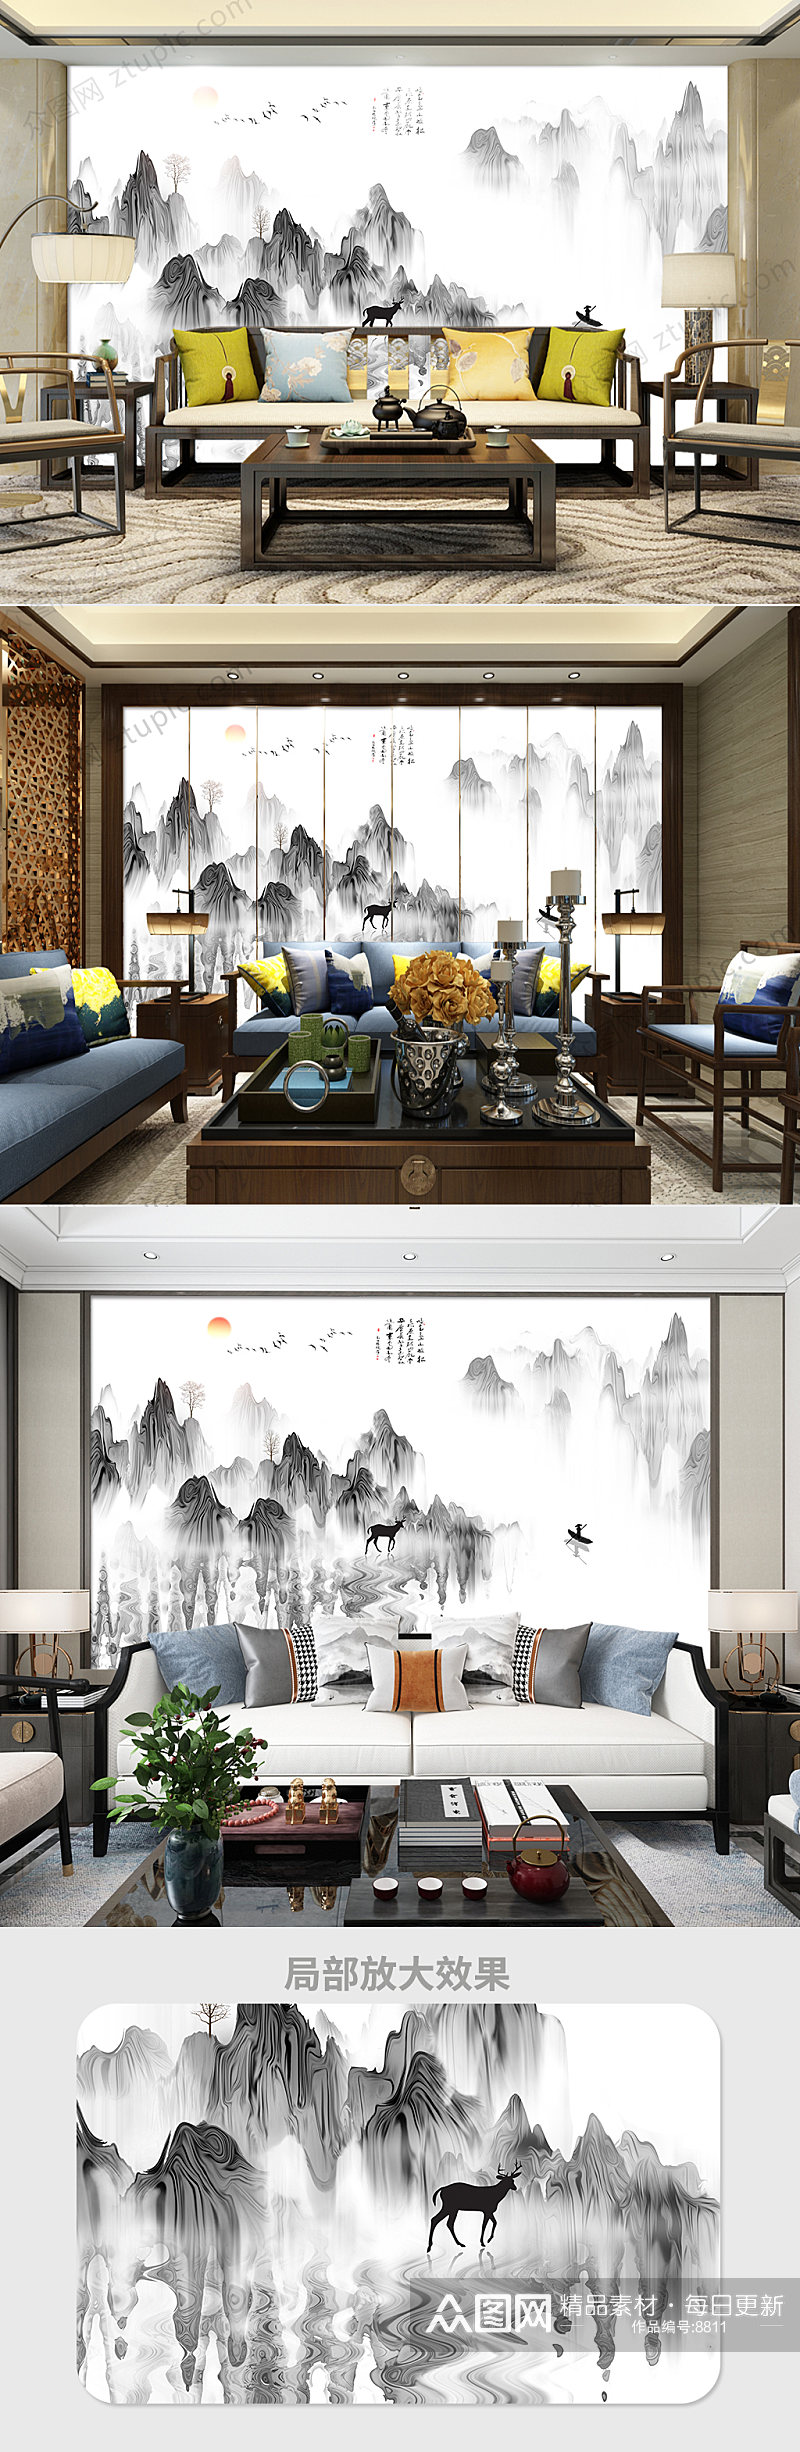 新中式水墨山水画背景墙设计素材